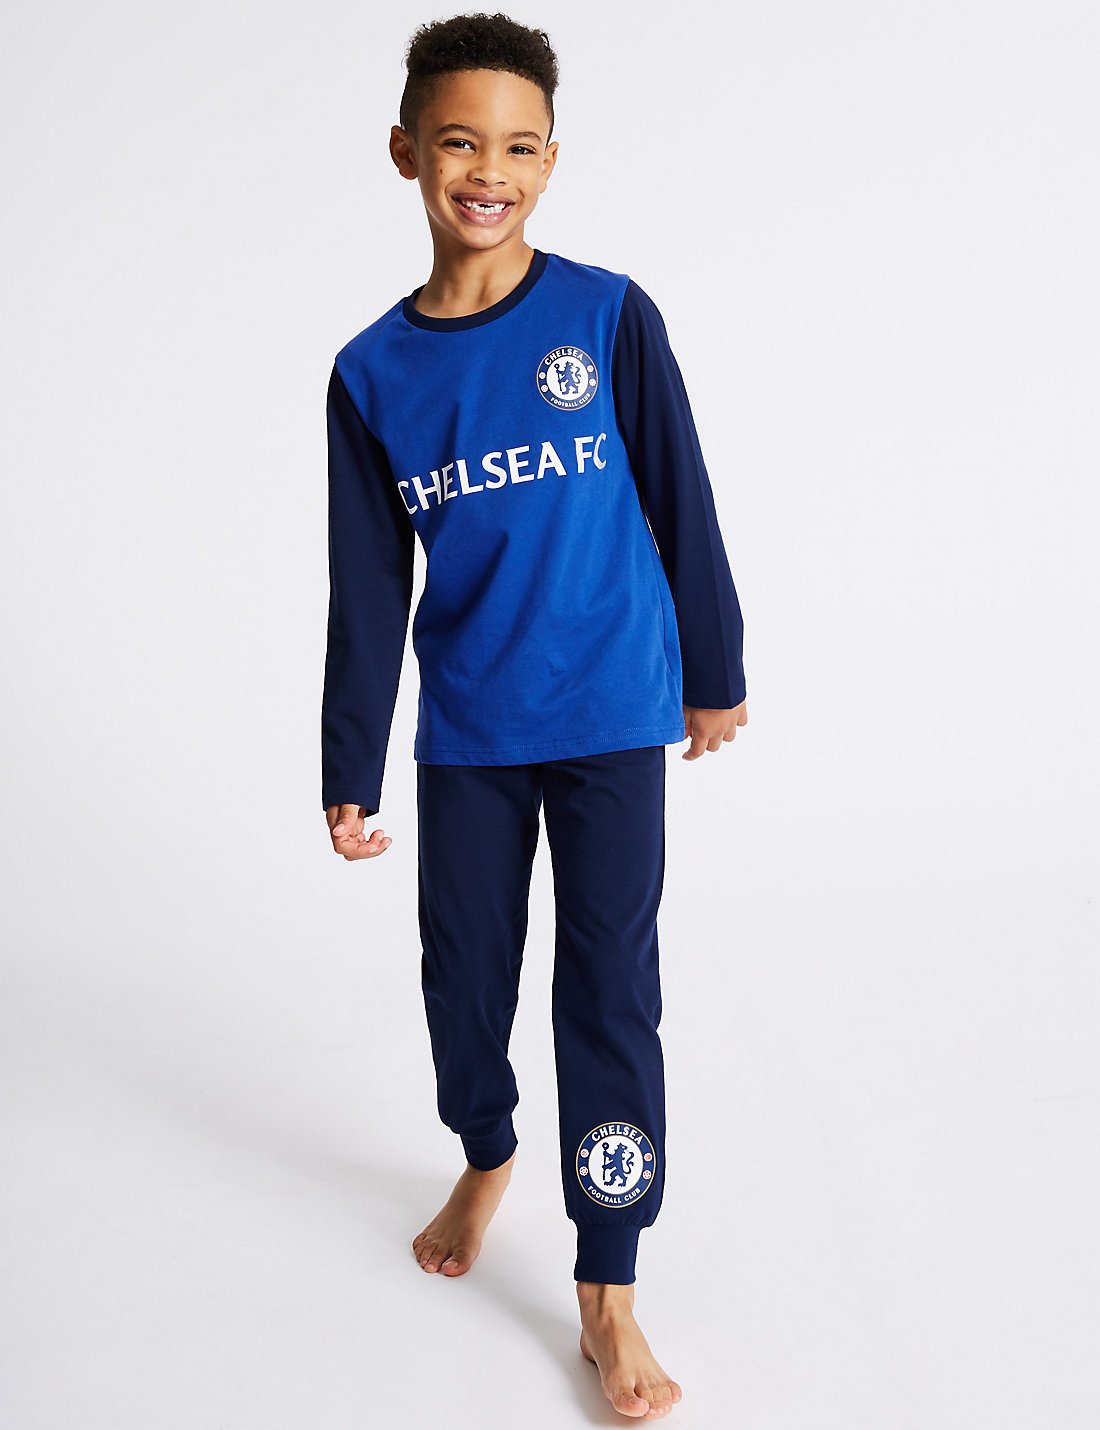 Saf Pamuklu Chelsea FC Pijama Takımı (3 - 16 Yaş)